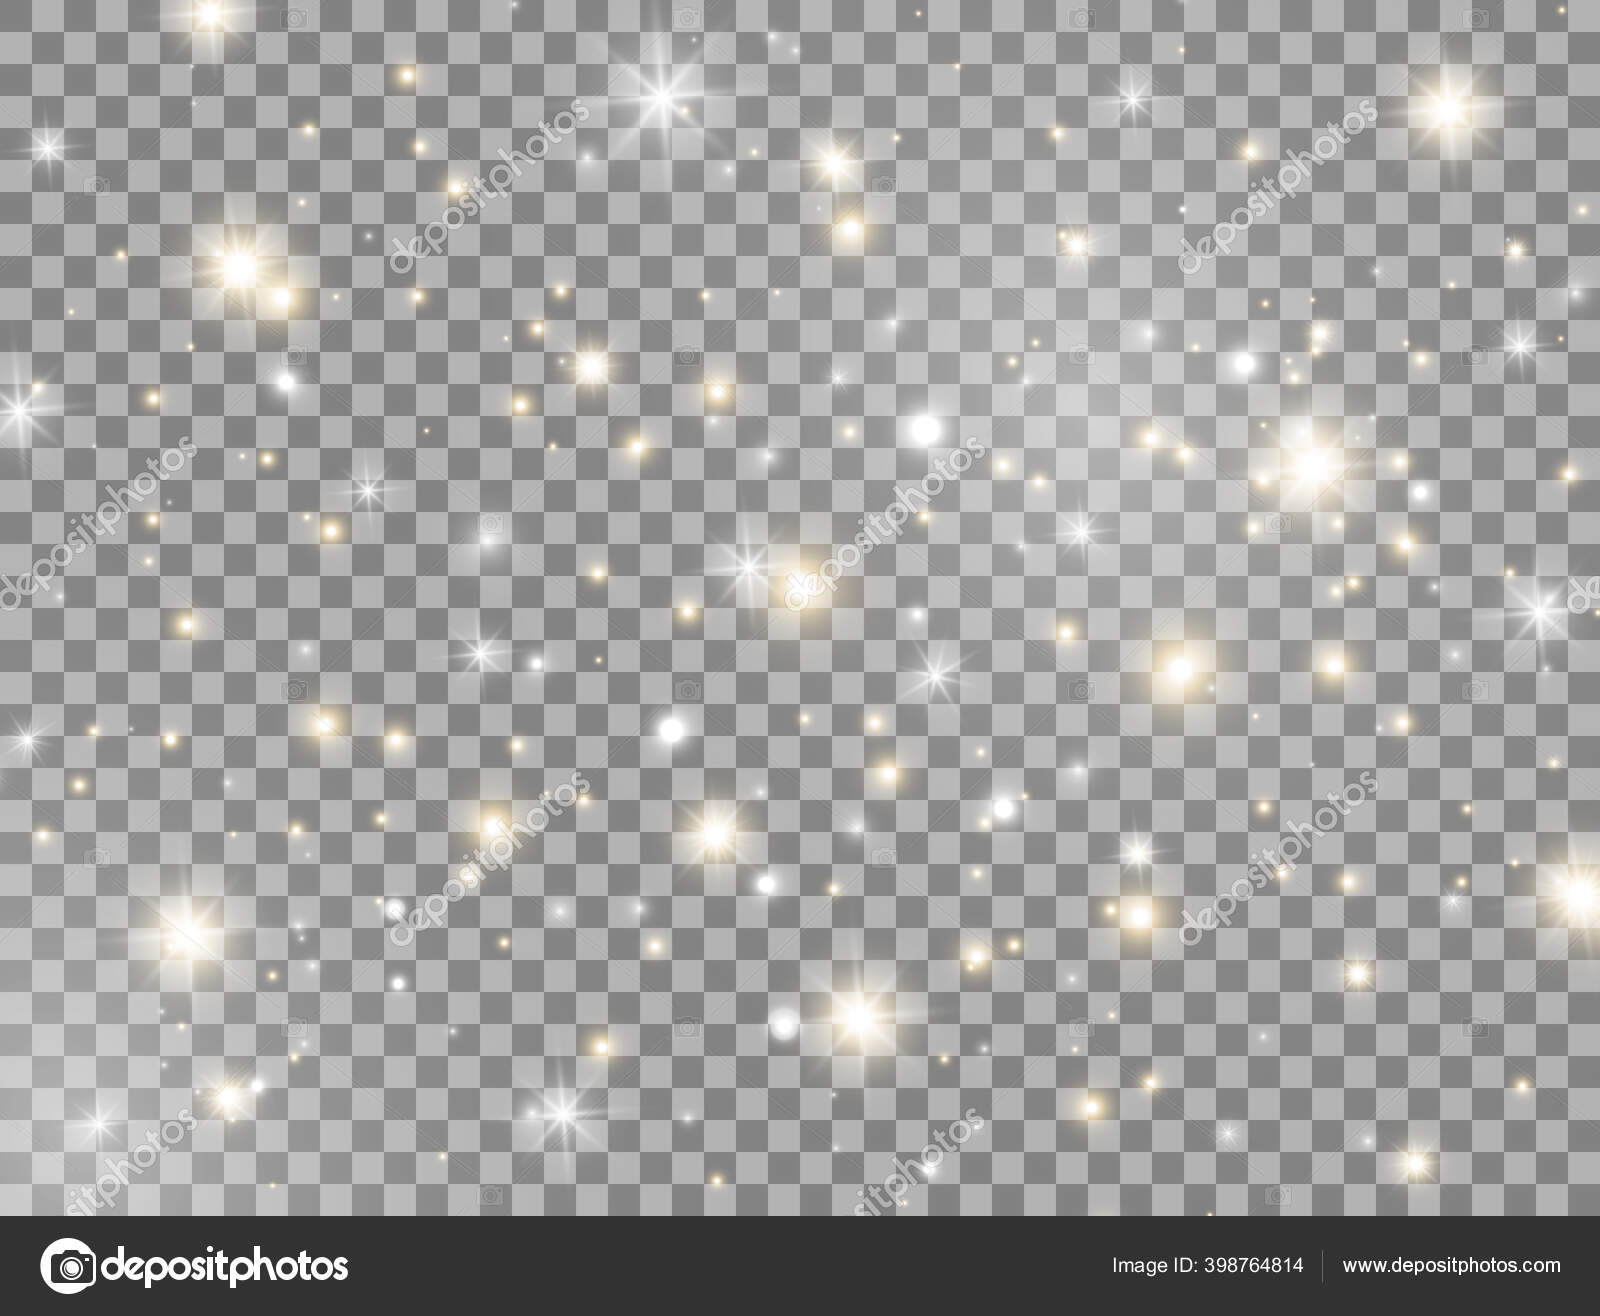 White Glow Stars